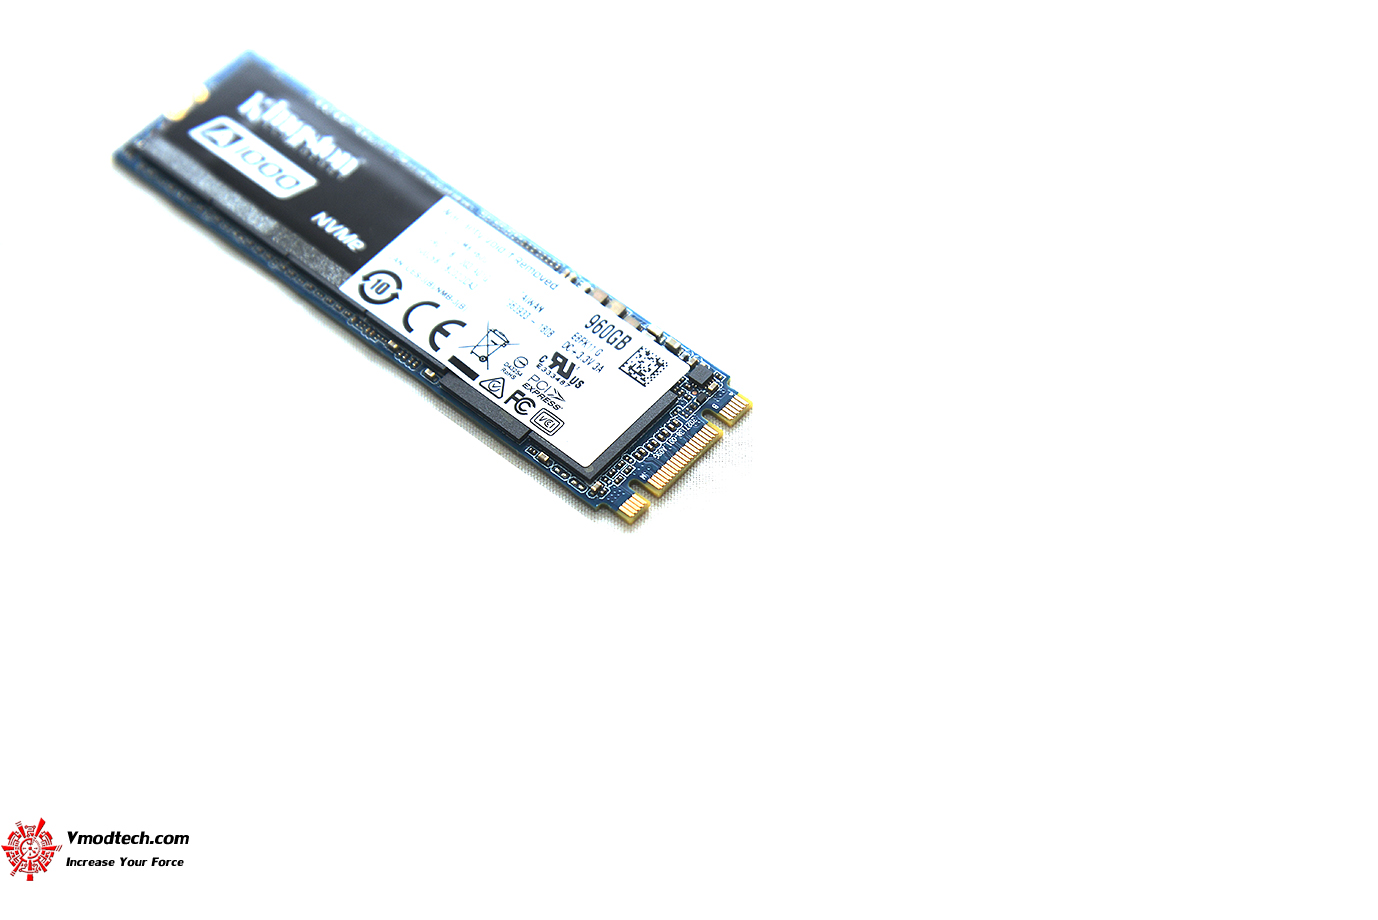 dsc 3219 KINGSTON A1000 NVMe PCIe SSD 960GB Review